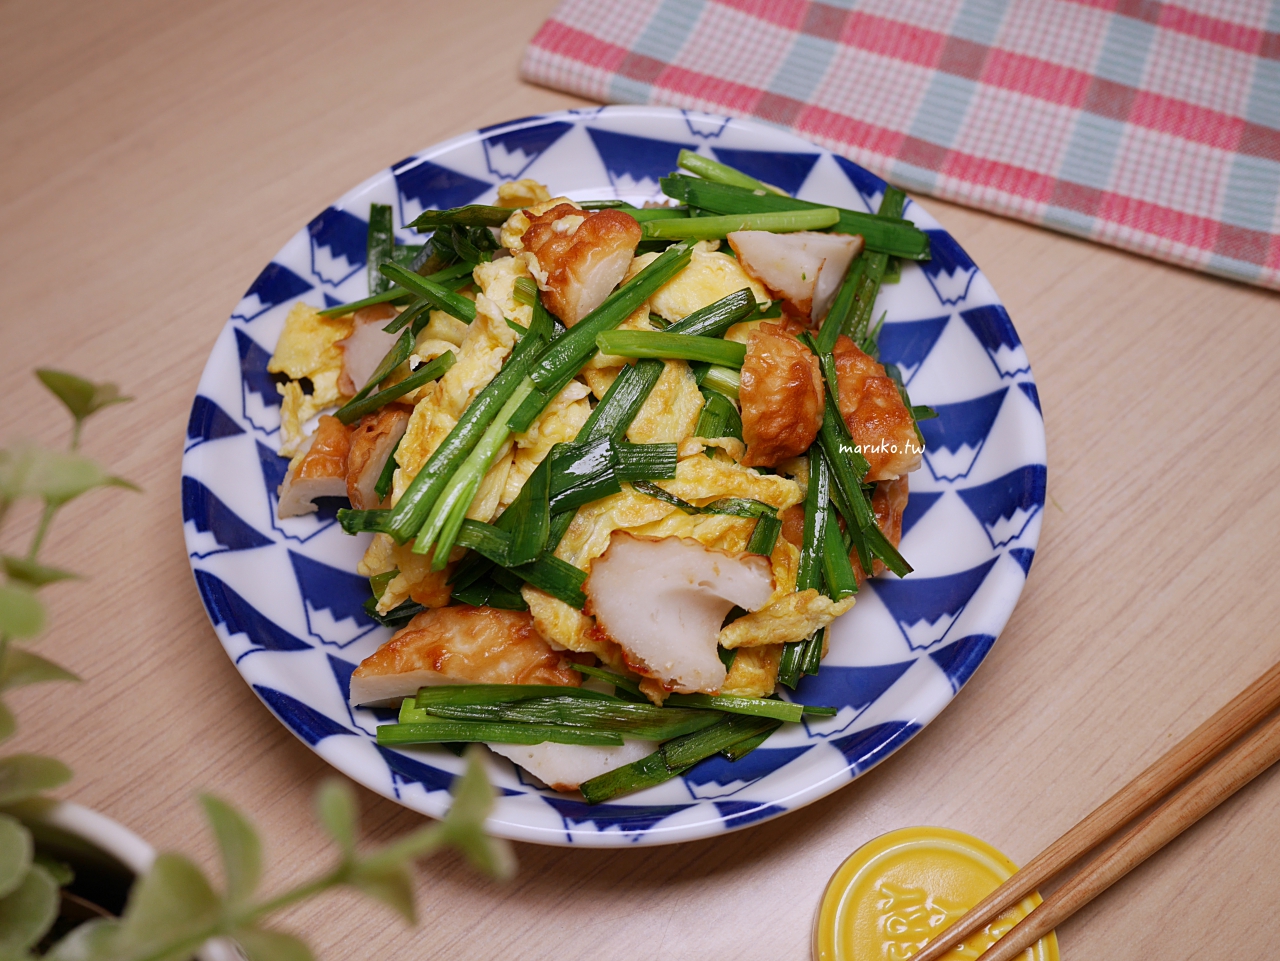 【食譜】韭菜炒蛋燴竹輪 一次三道菜，10分鐘晚餐系列馬上就開飯！ @Maruko與美食有個約會